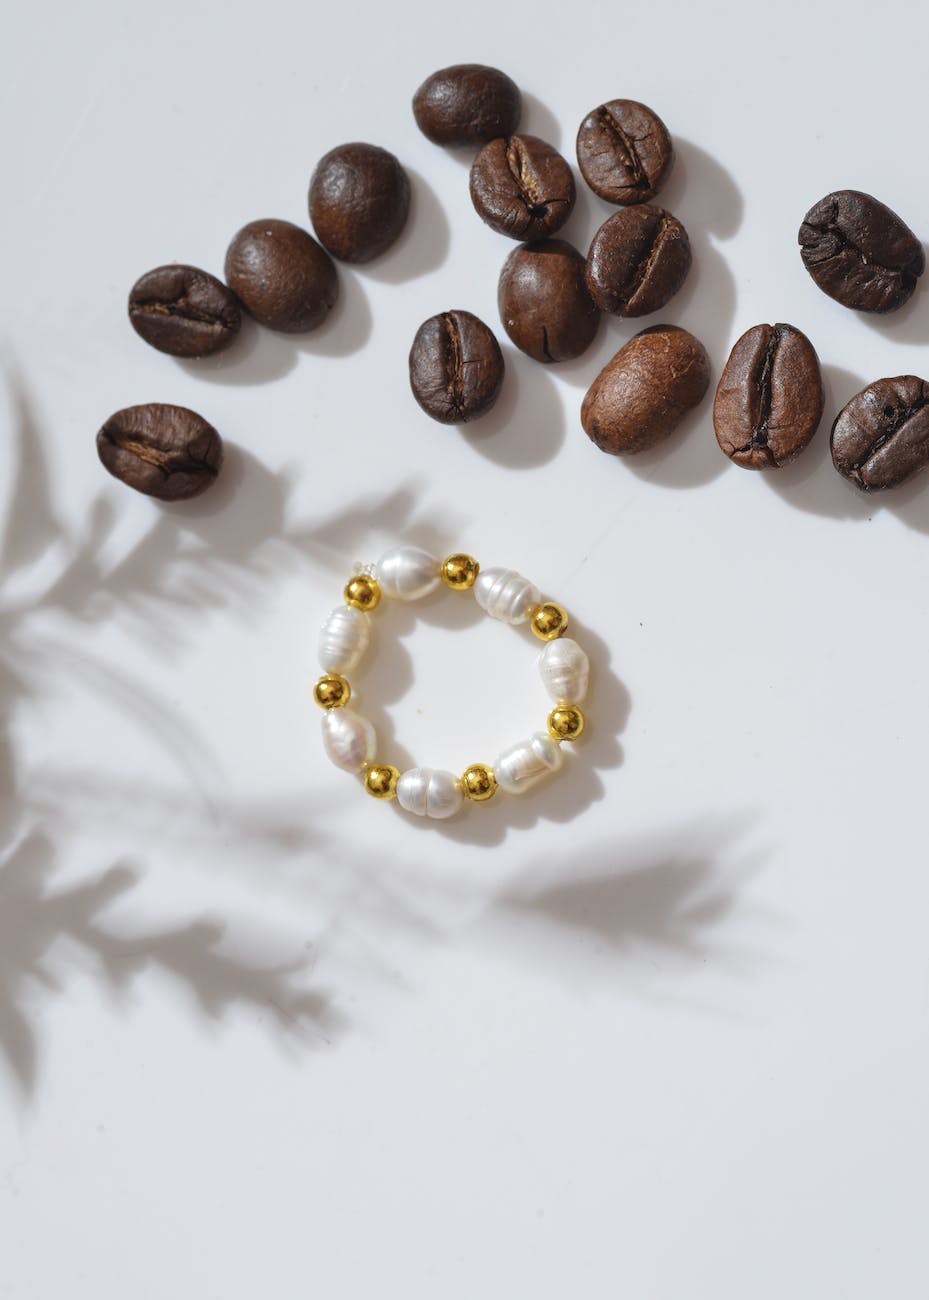 Handmade Jewelry Using Coffee Beans: Caffeinated Chic